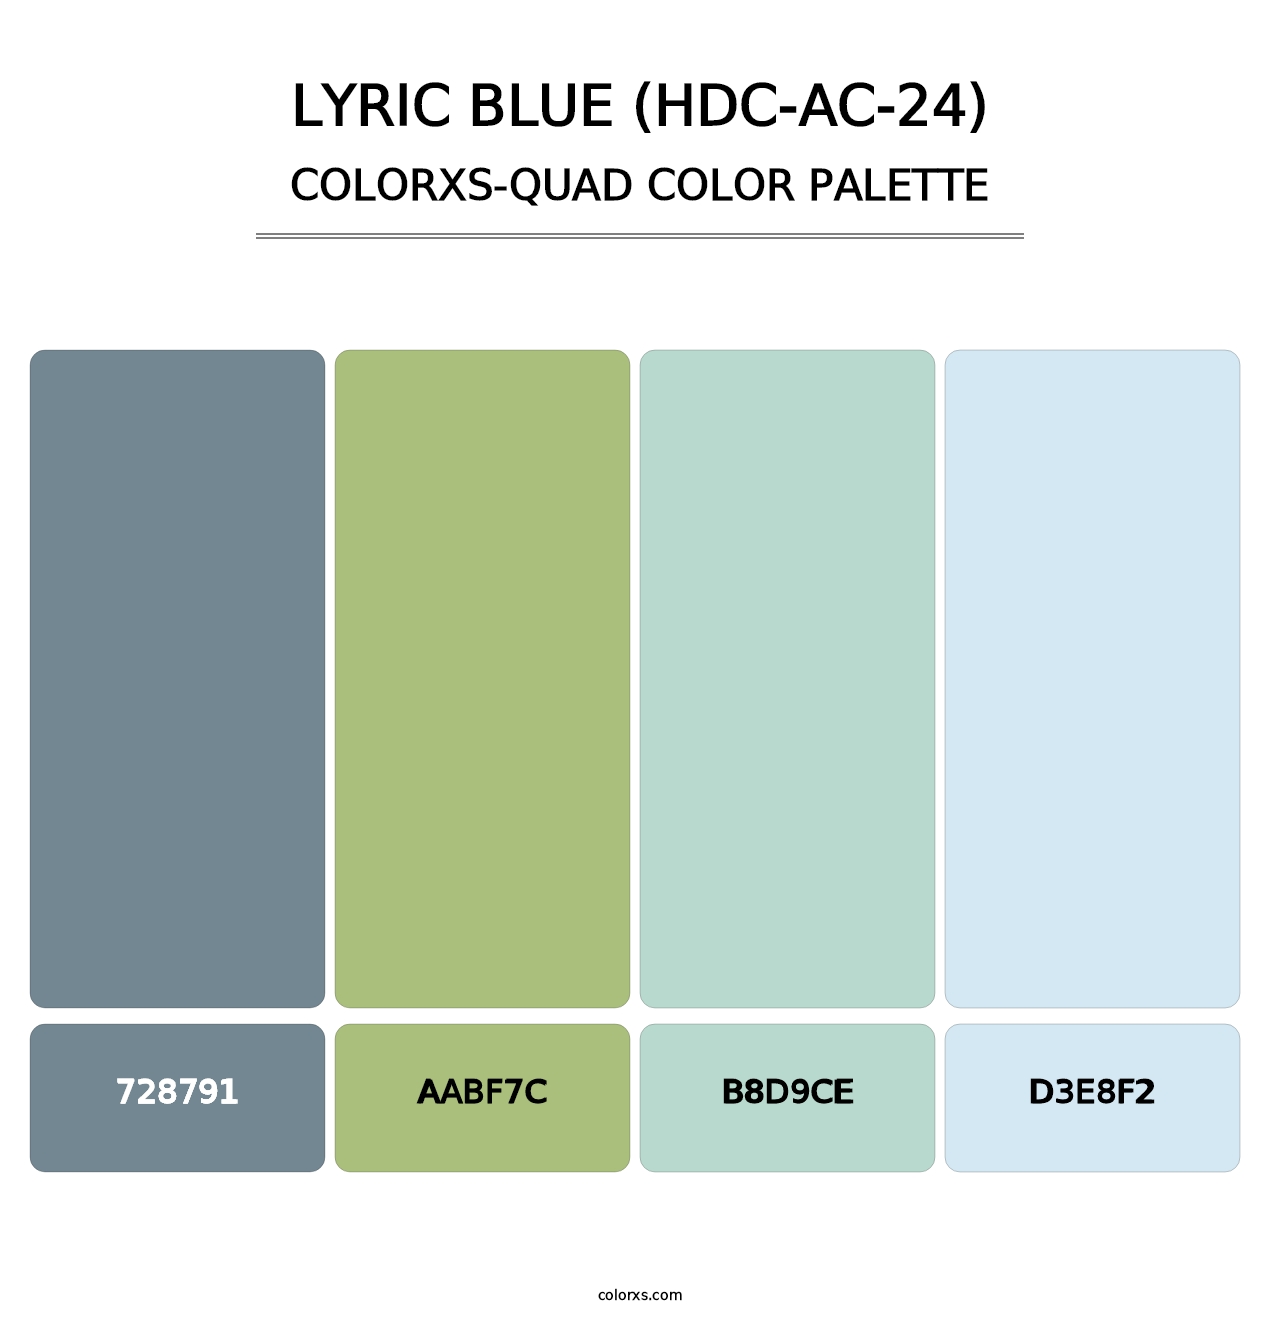 Lyric Blue (HDC-AC-24) - Colorxs Quad Palette